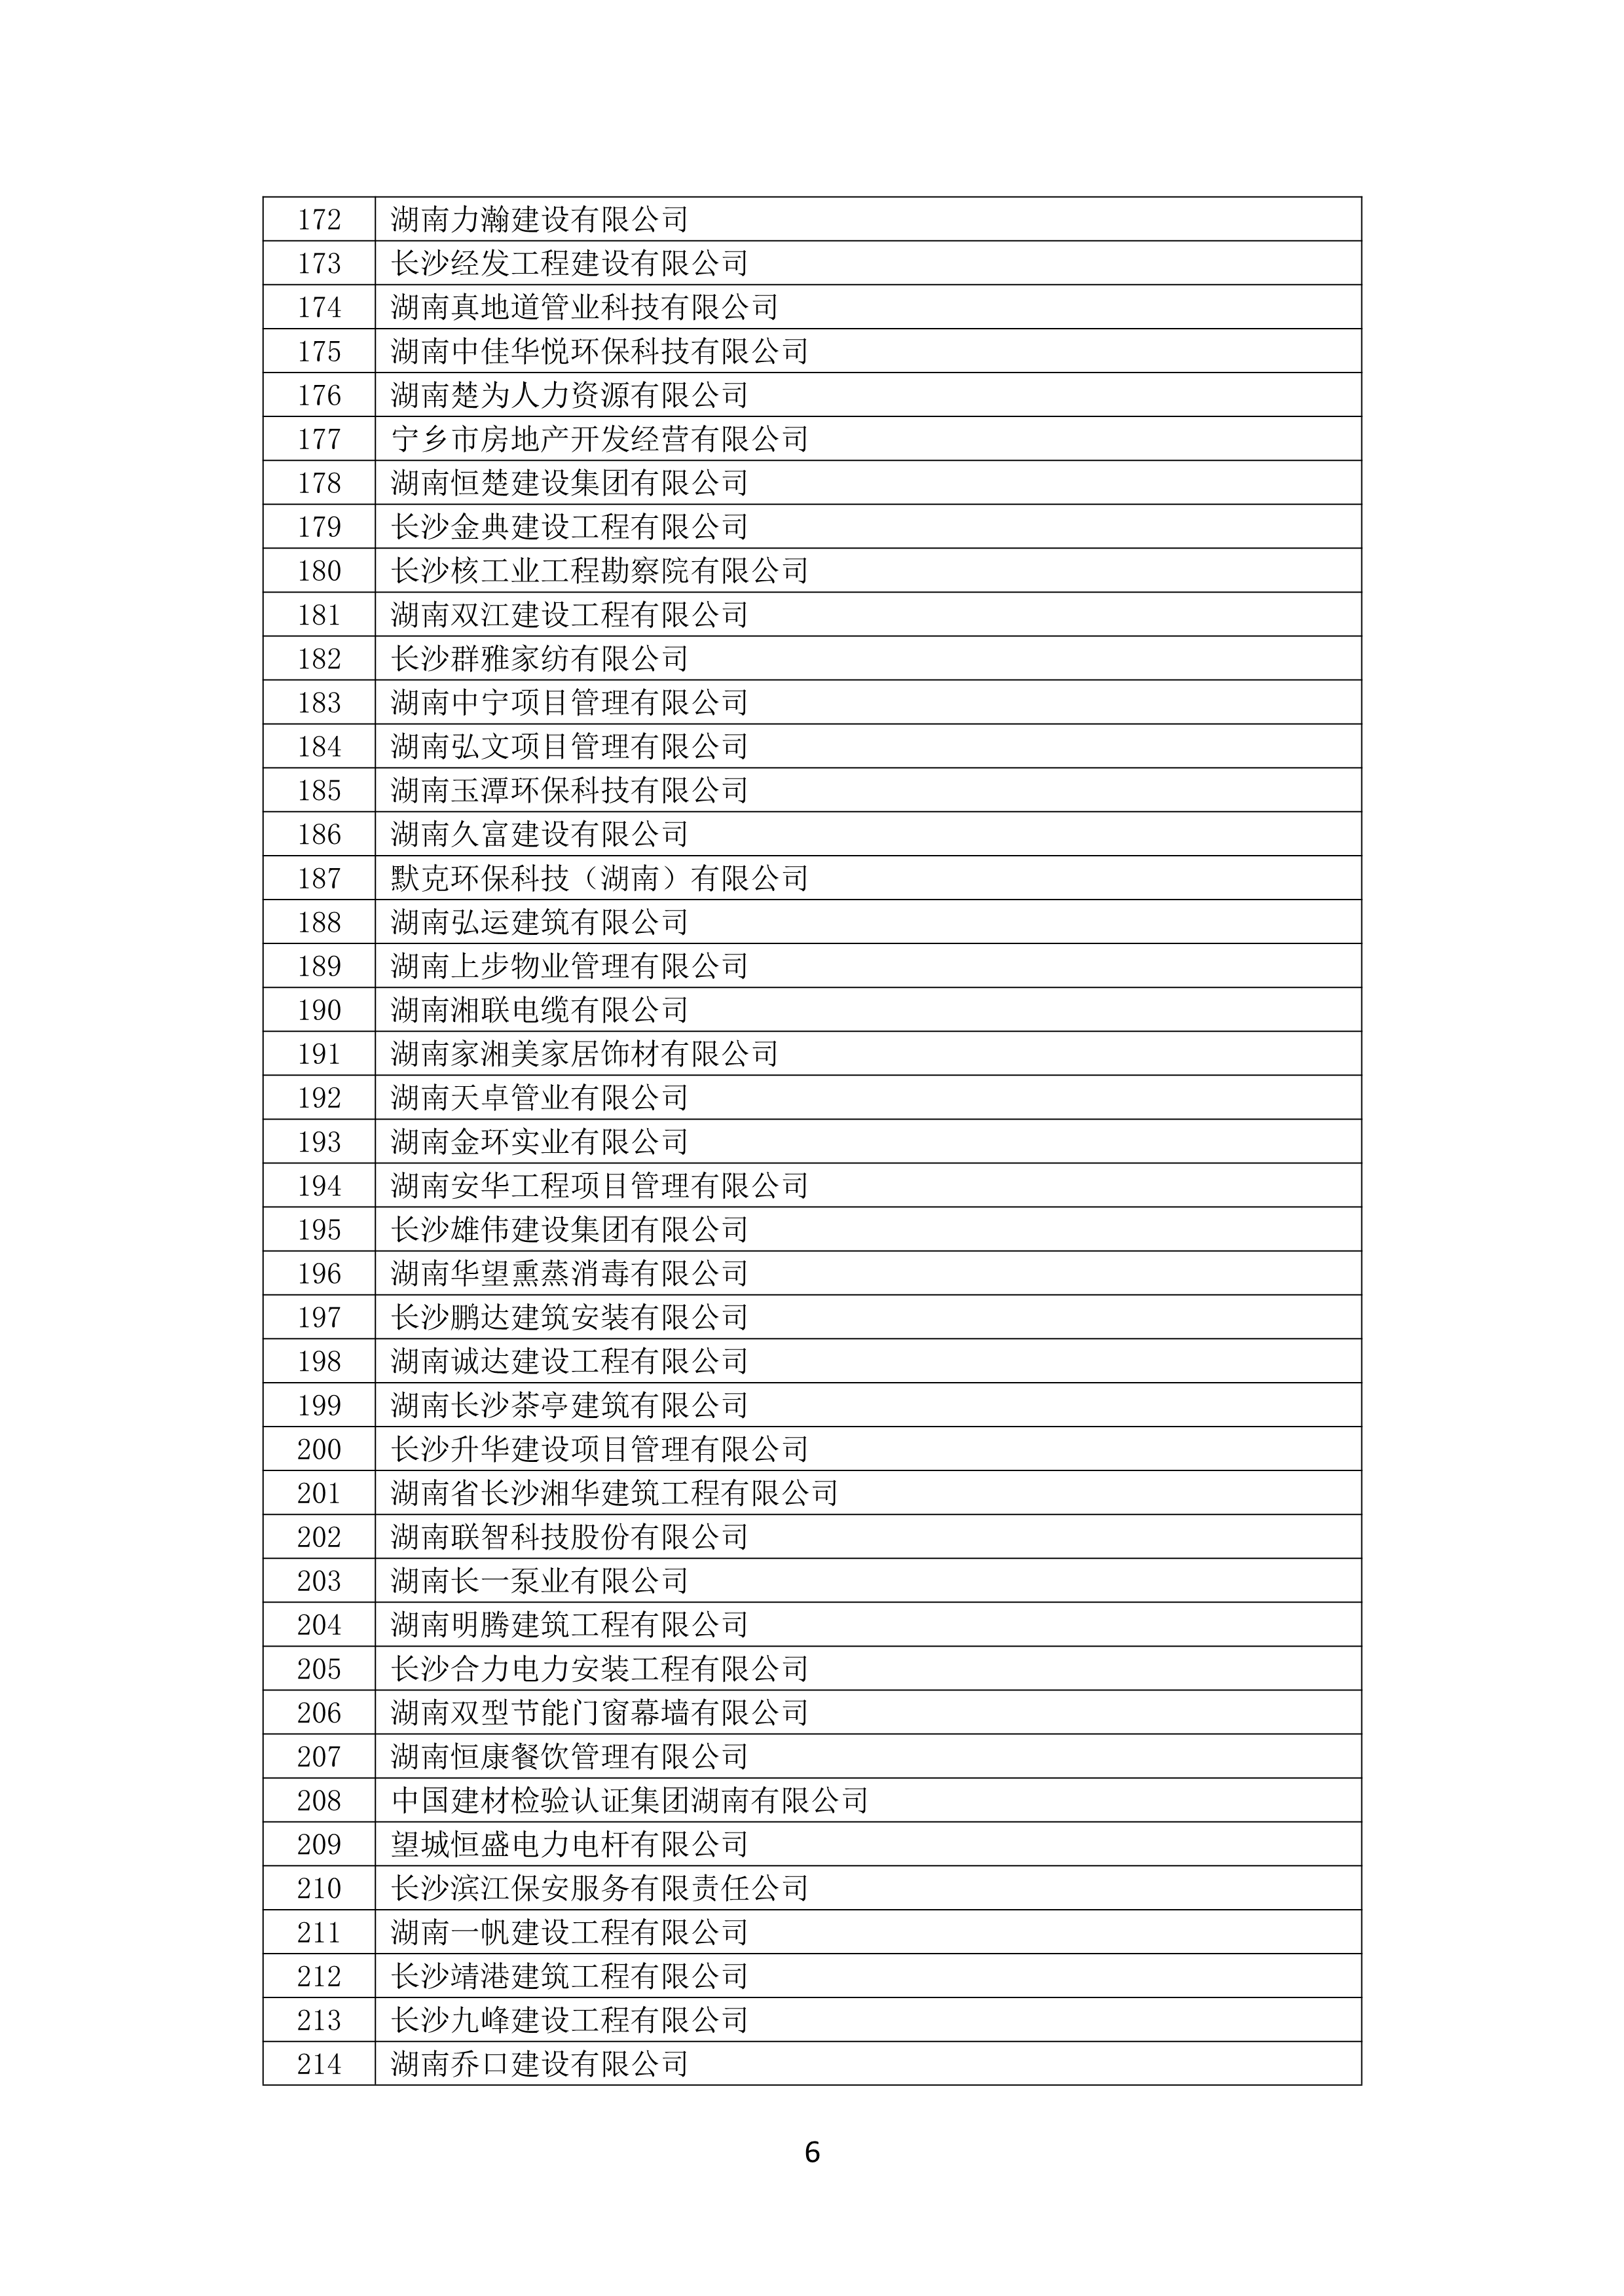 2021 年(nián)度湖南省守合同重信用企業名單_7.png